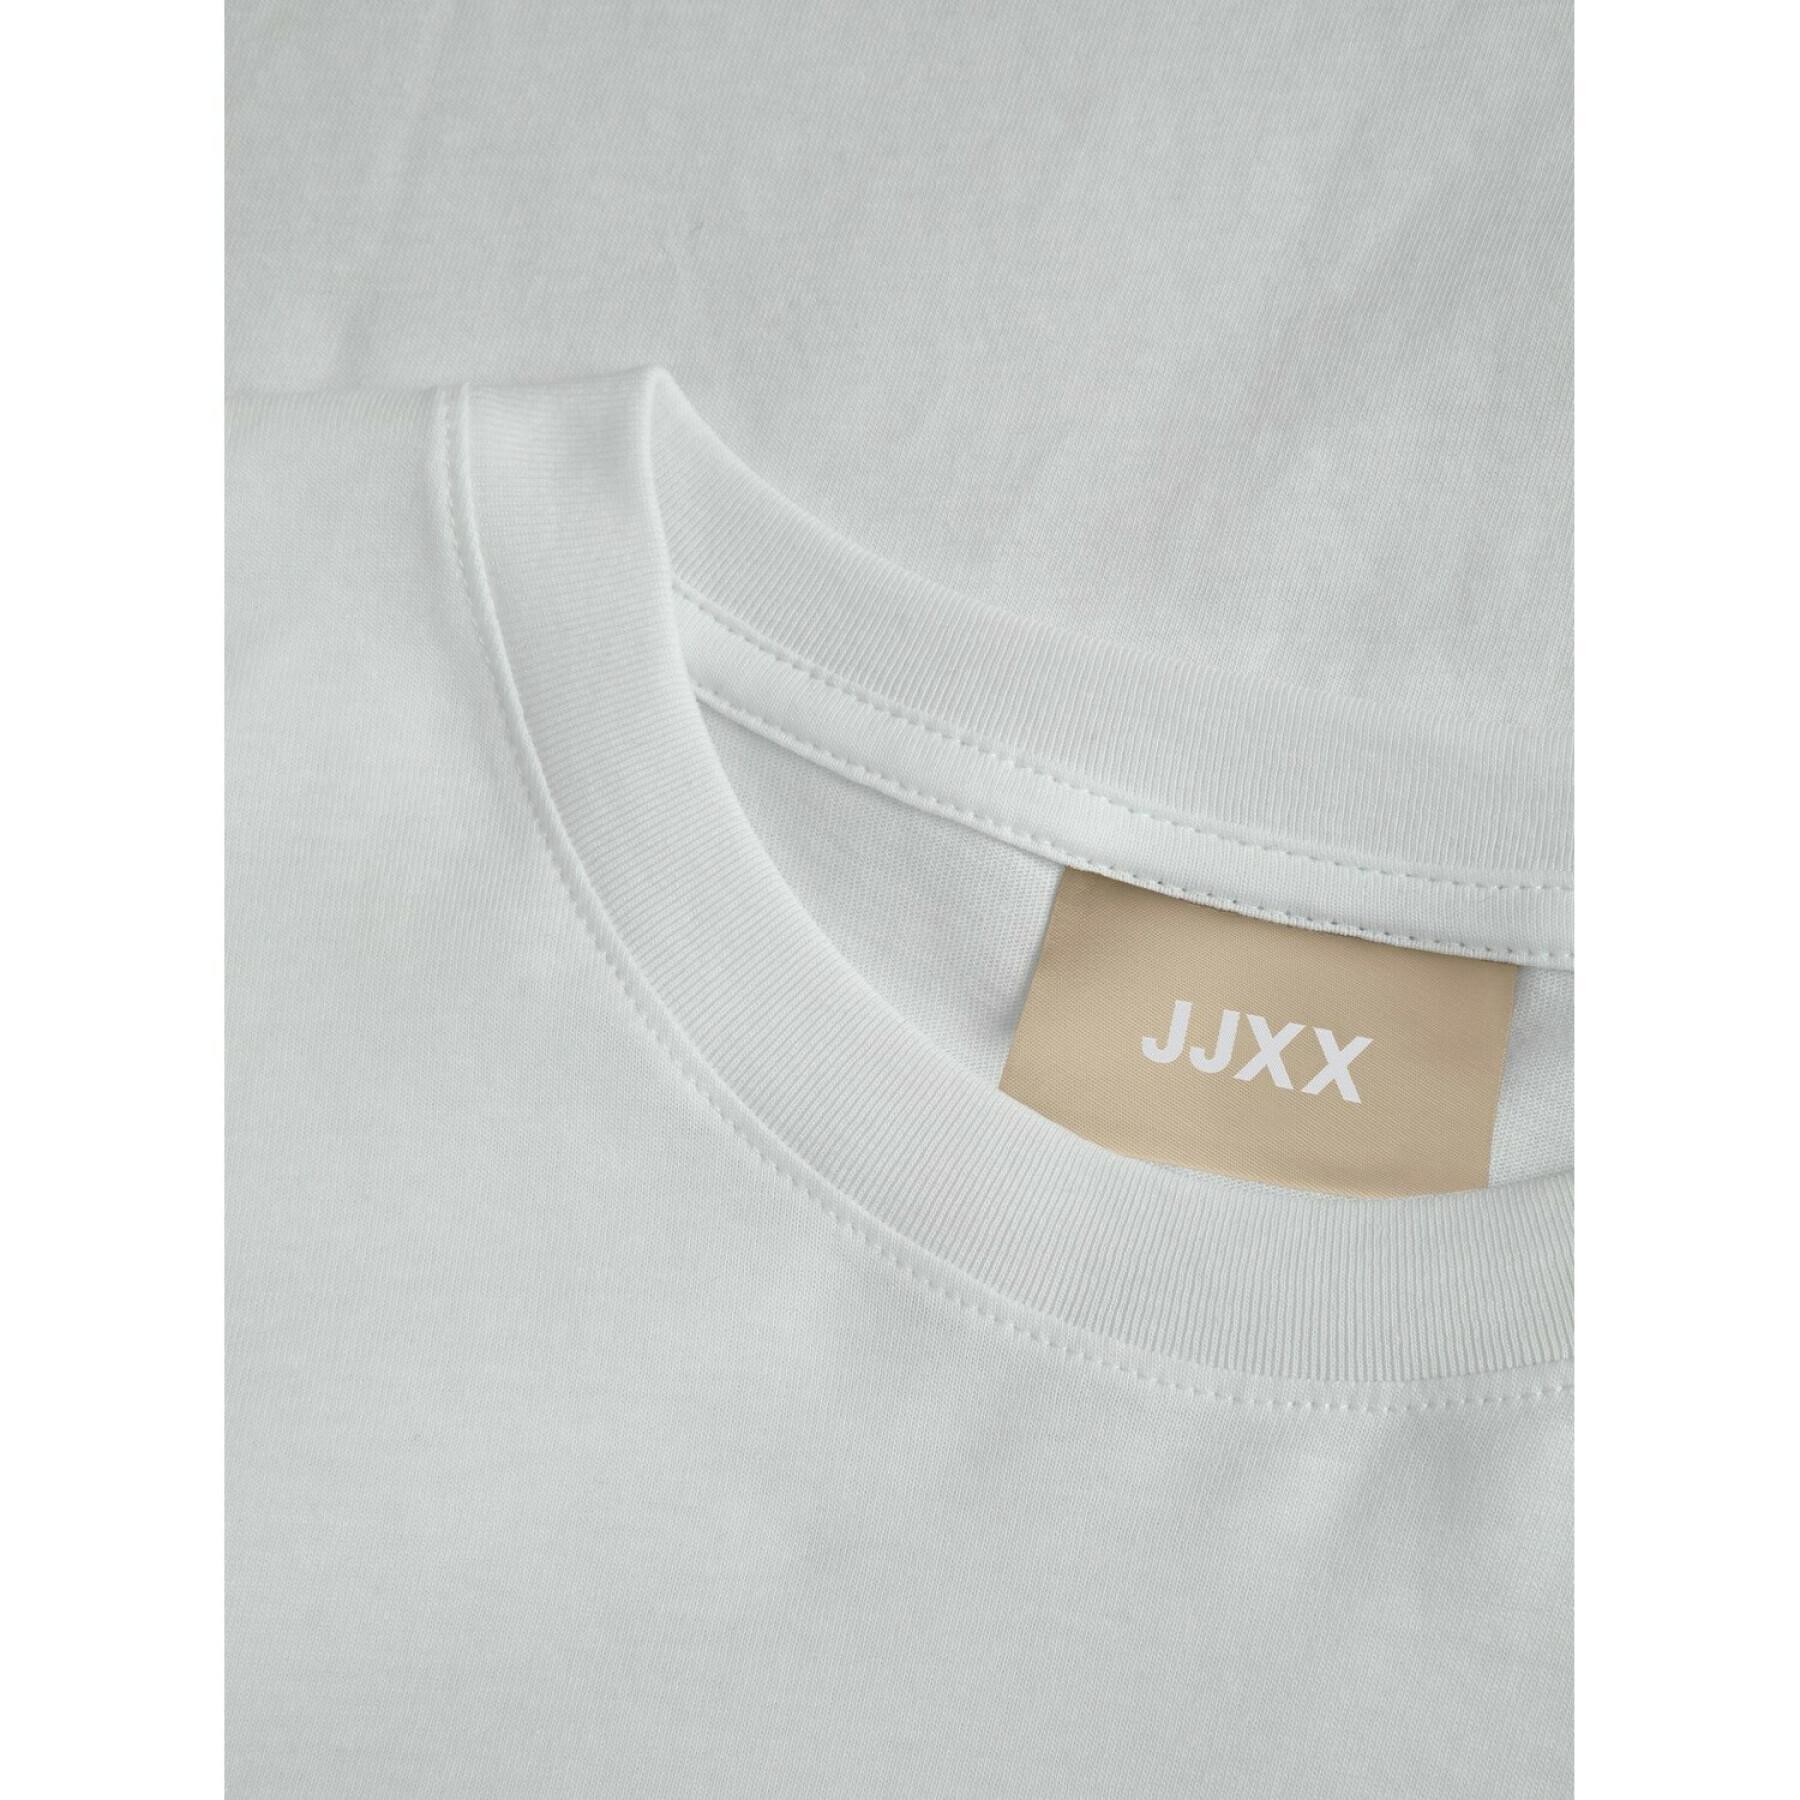 T-Shirt Damen JJXX anna